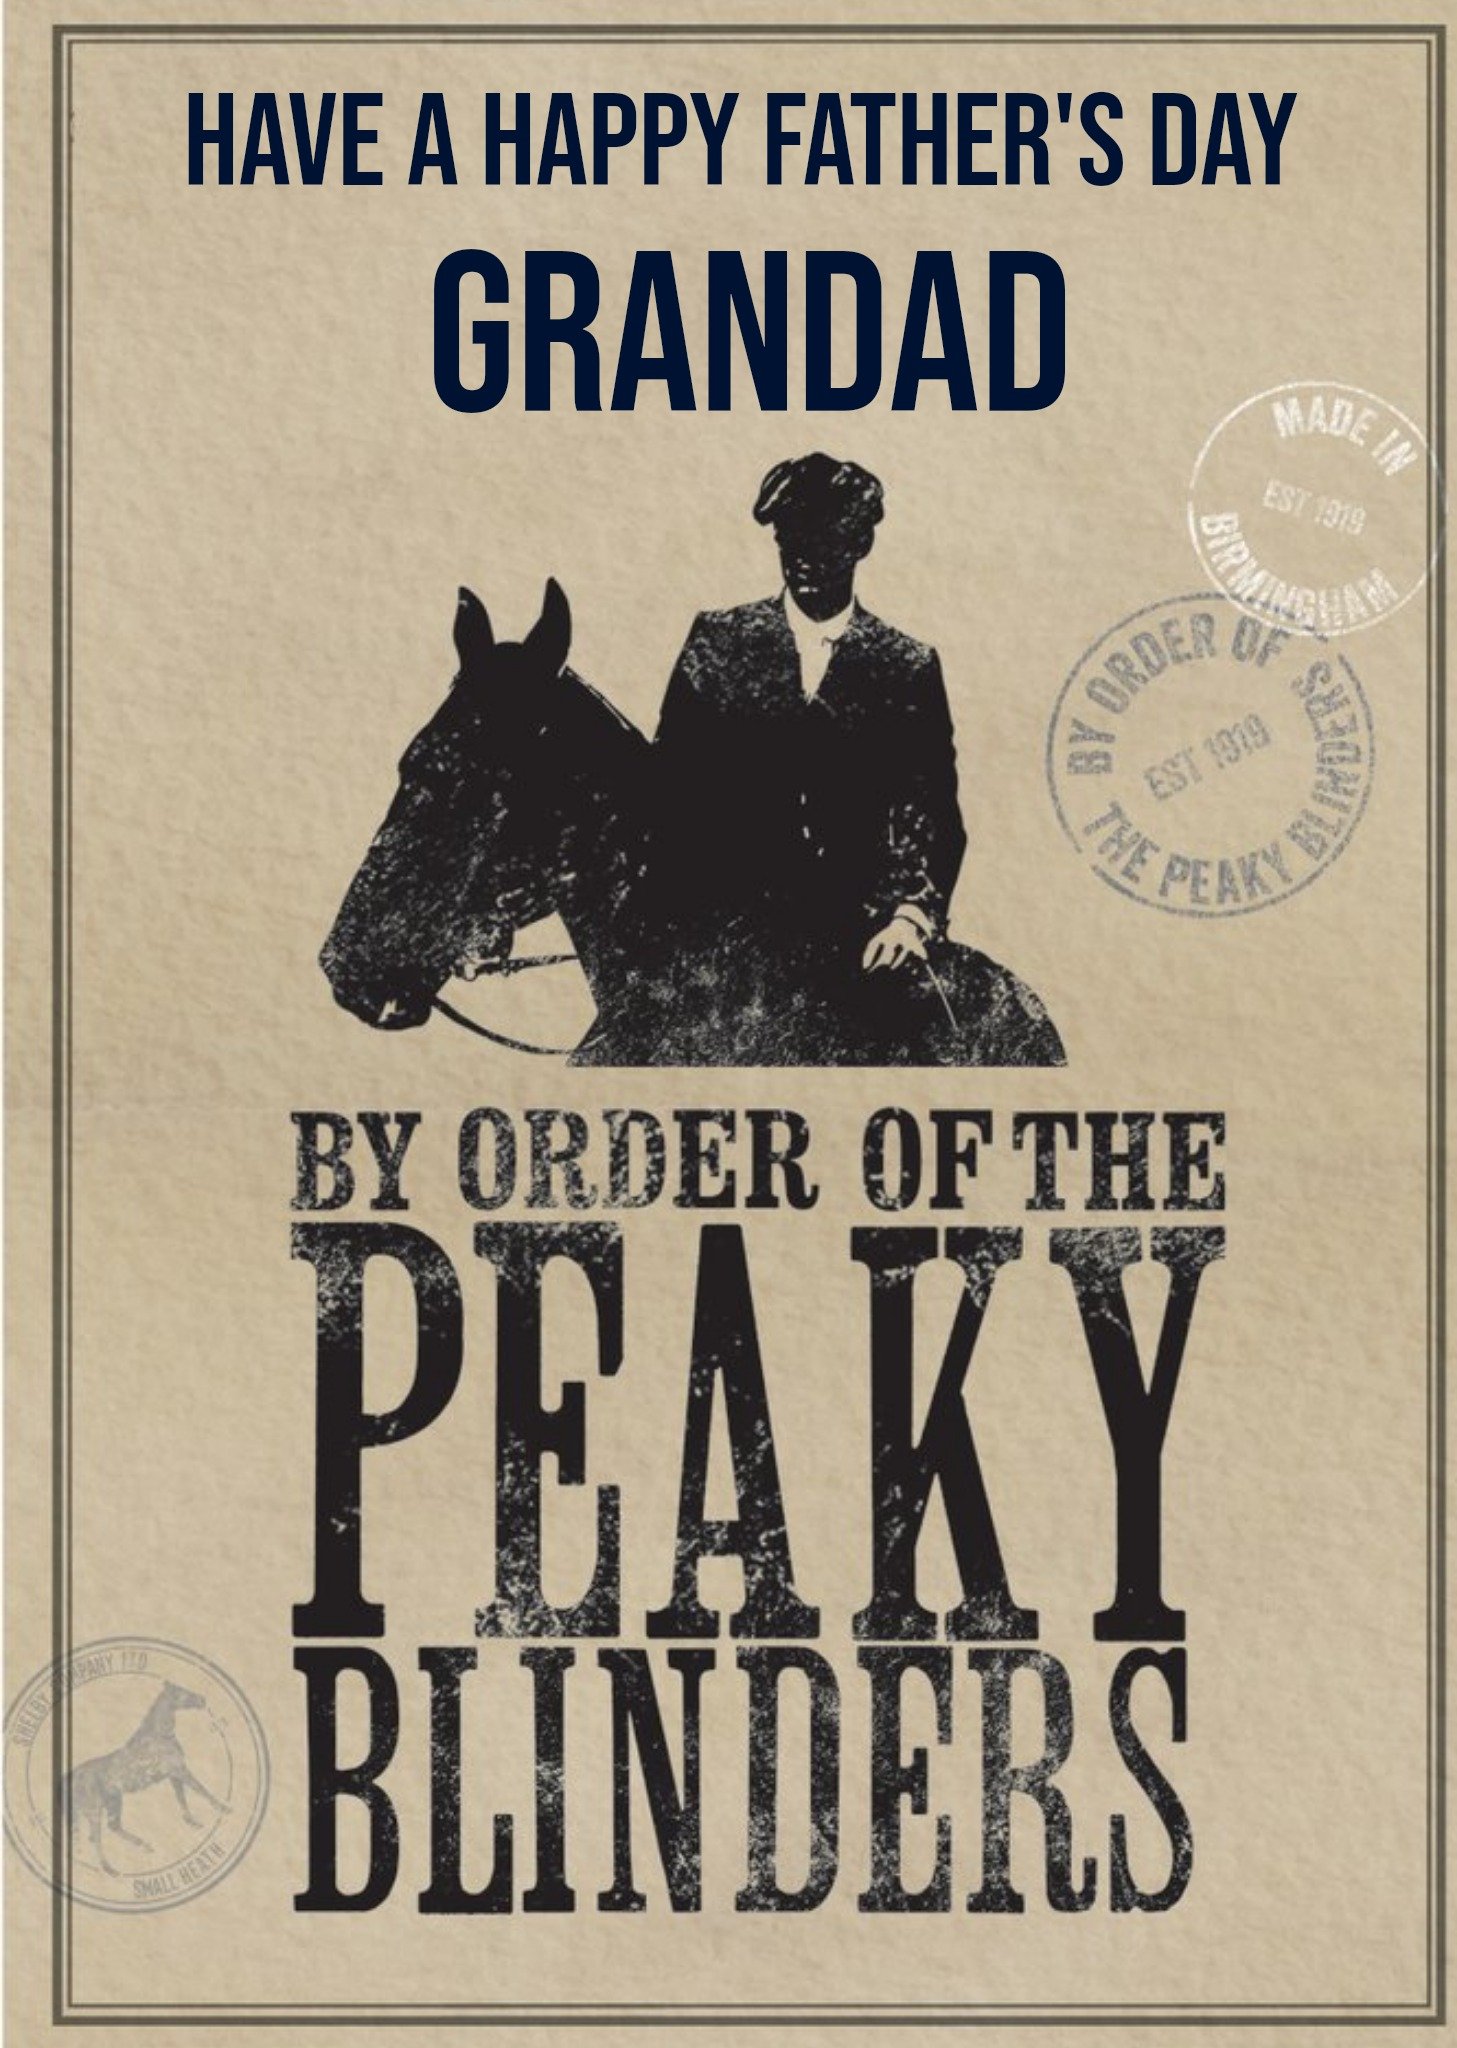 Peaky Blinders Birthday Card By Order Of The Peaky Blinders, Large